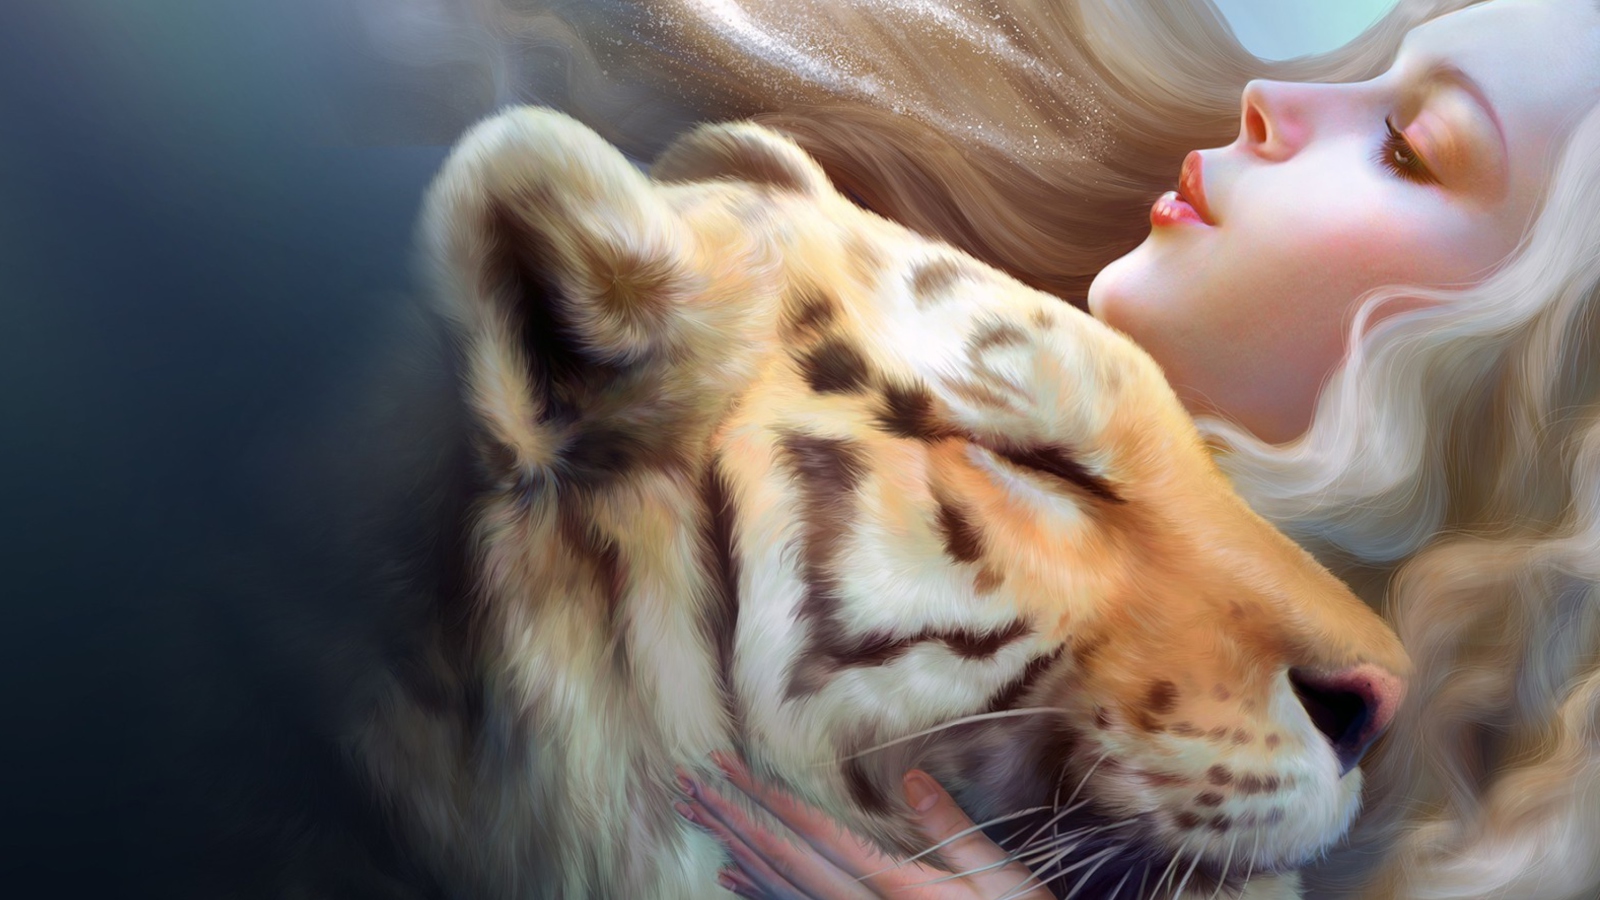 Обои Girl And Tiger Art 1600x900